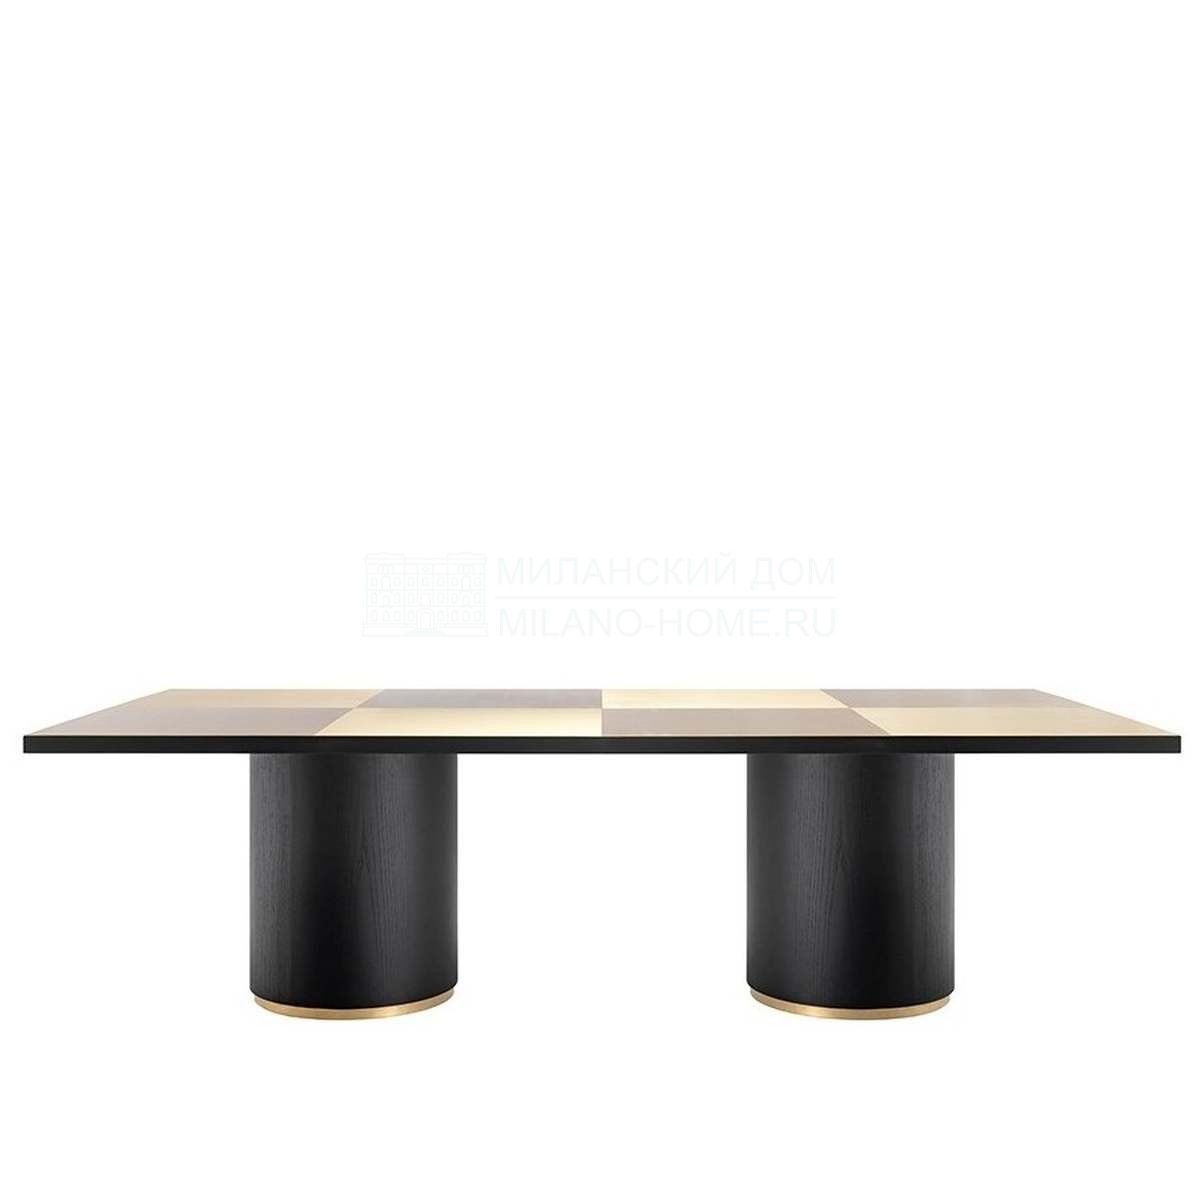 Обеденный стол Tobia / art.00265 из Италии фабрики DAYTONA